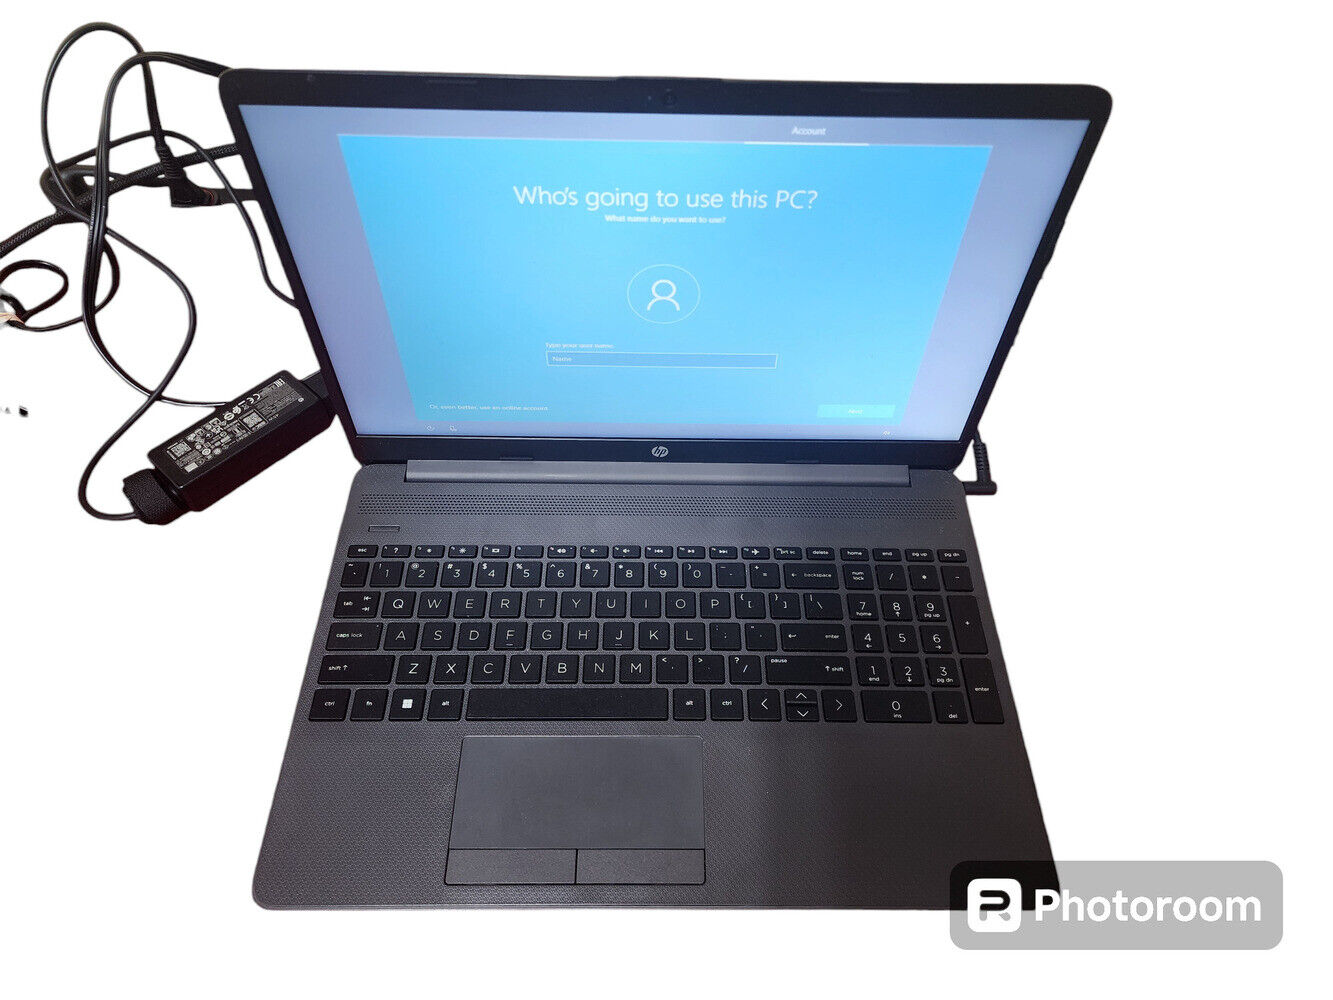 Hewlett Packard Hp255g8, #cnd2352gxb; Hp 255 G8 Business Laptop 